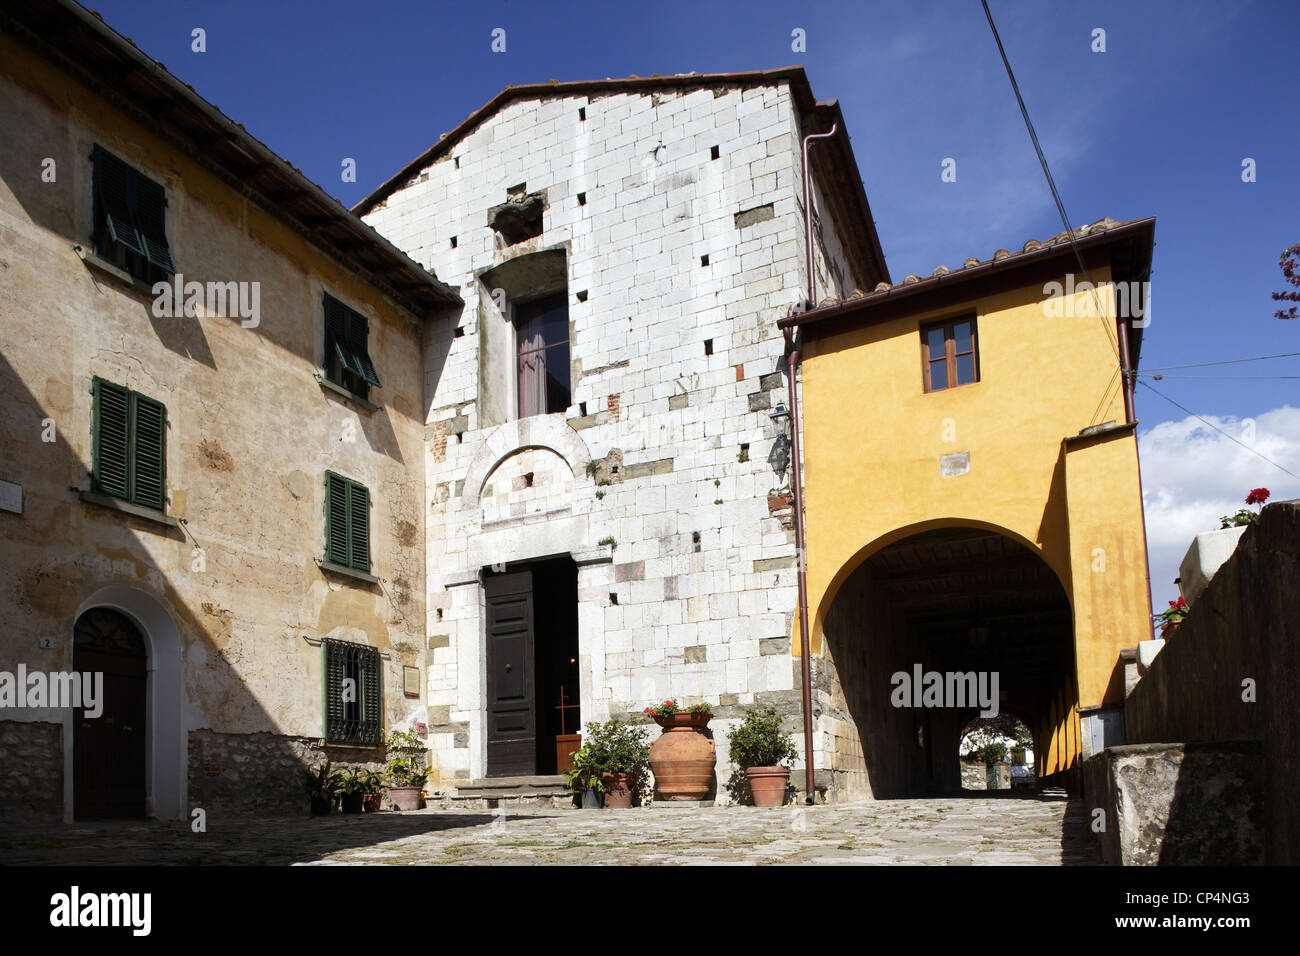 The Church of Saint Michael, 13th century. Serravalle Pistoiese, Pistoia Province, Tuscany Region, Italy. Stock Photo